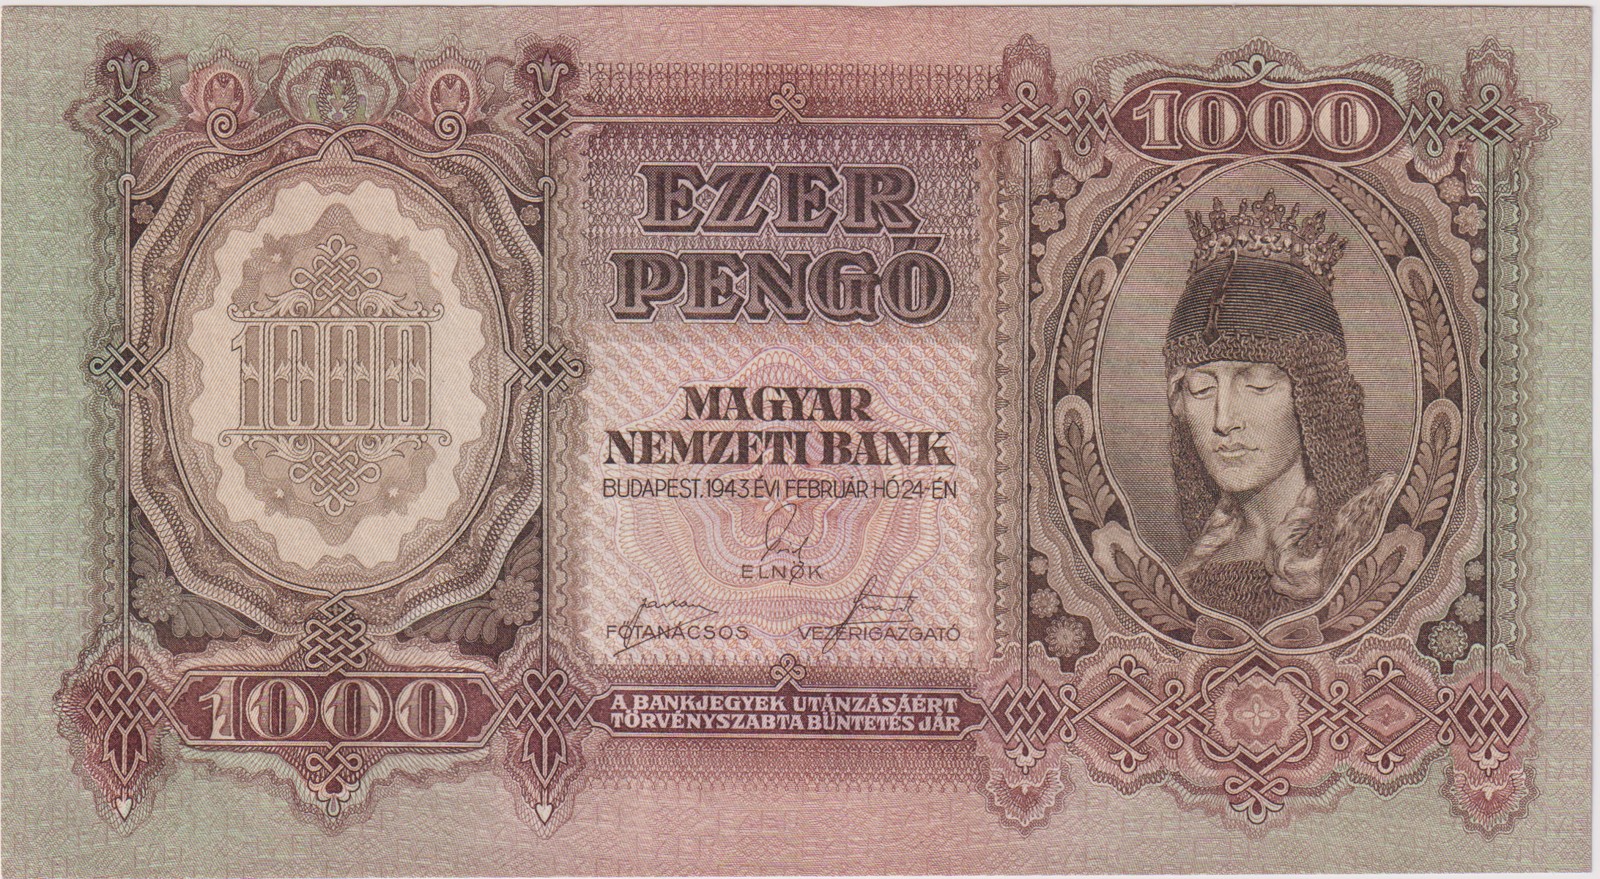 Maďarská platidla na československém území 1938-45